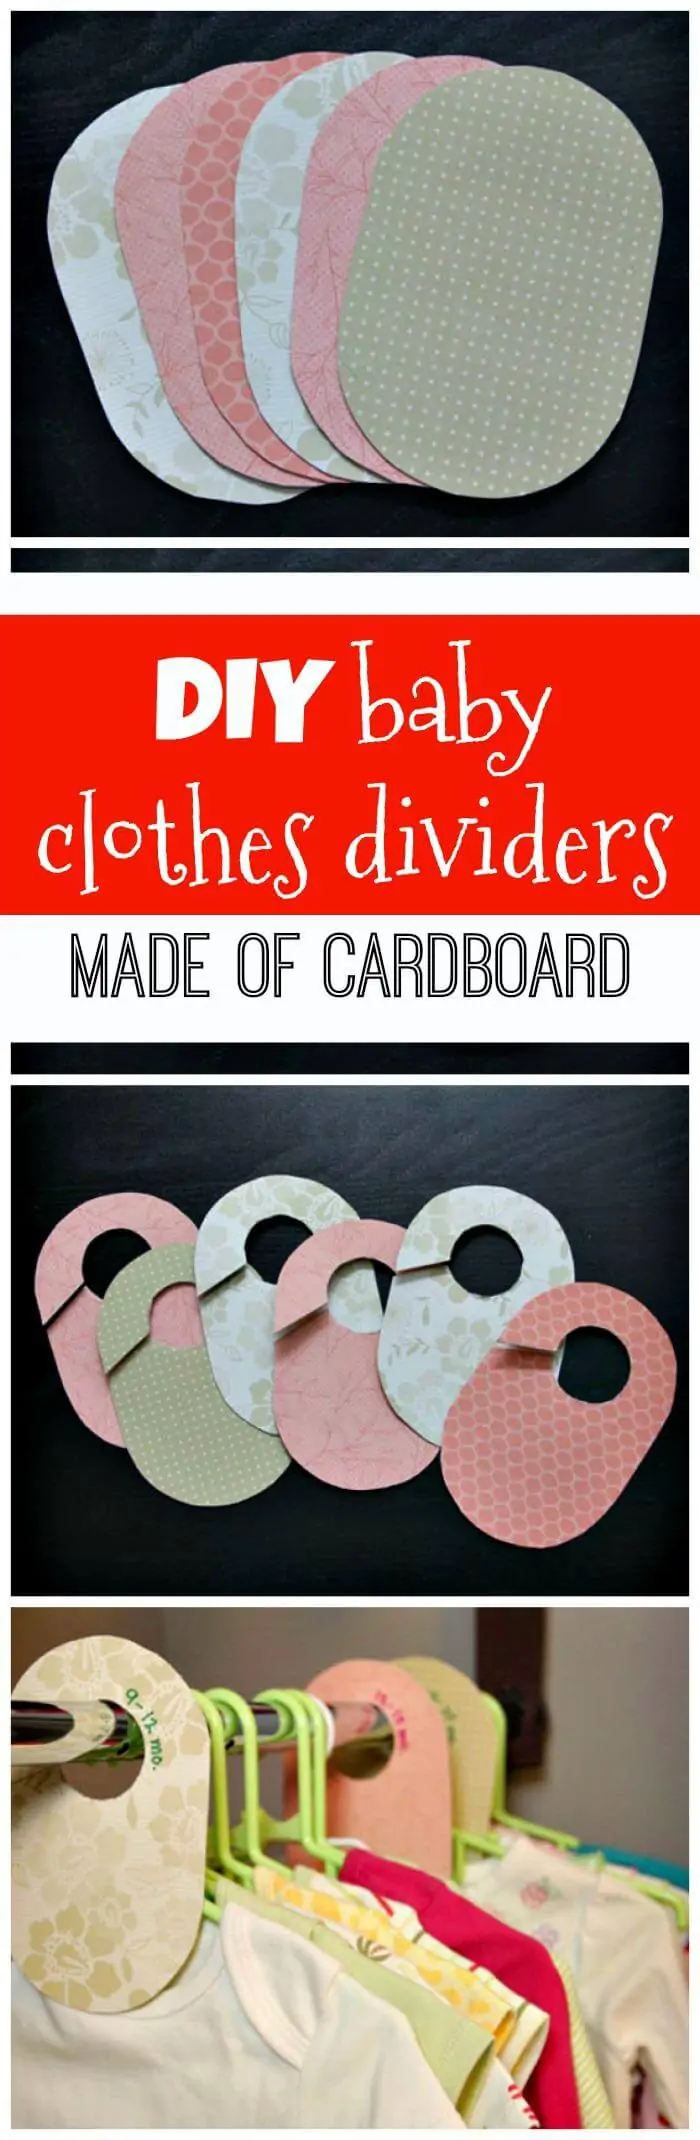 Divisores de ropa de bebé de bricolaje hechos de cartón